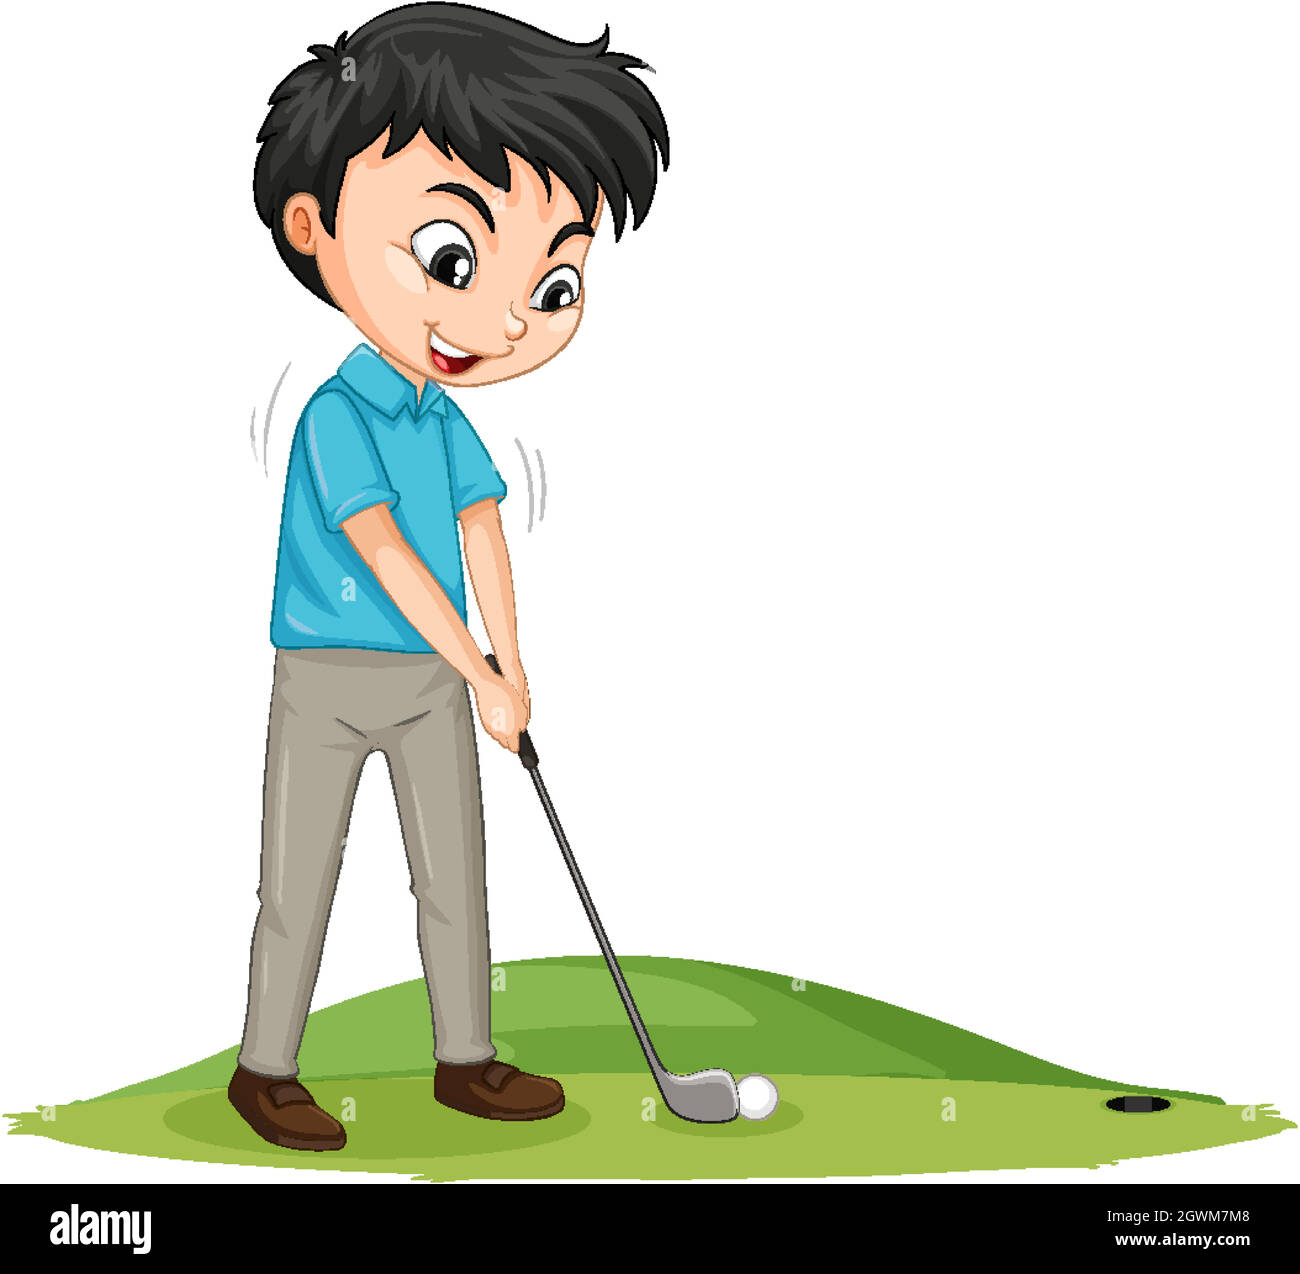 Personnage de dessin animé d'un garçon jouant au golf sur fond blanc Illustration de Vecteur